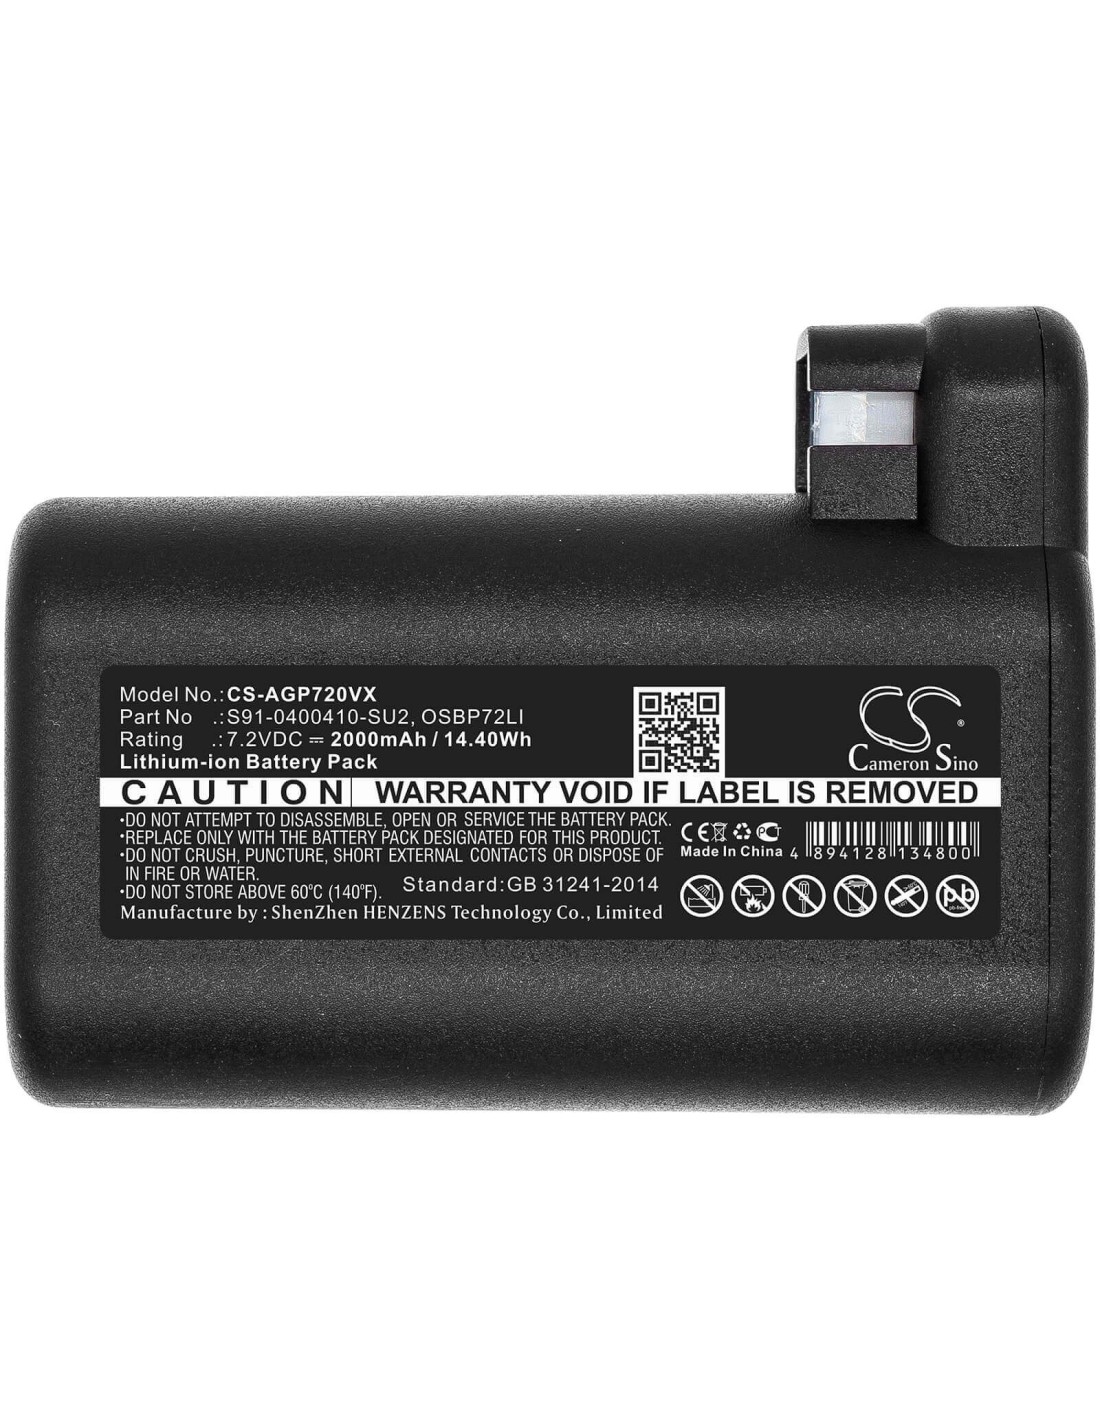 Battery for Aeg, 900258195, 900277268, 900277283 7.2V, 2000mAh - 14.40Wh